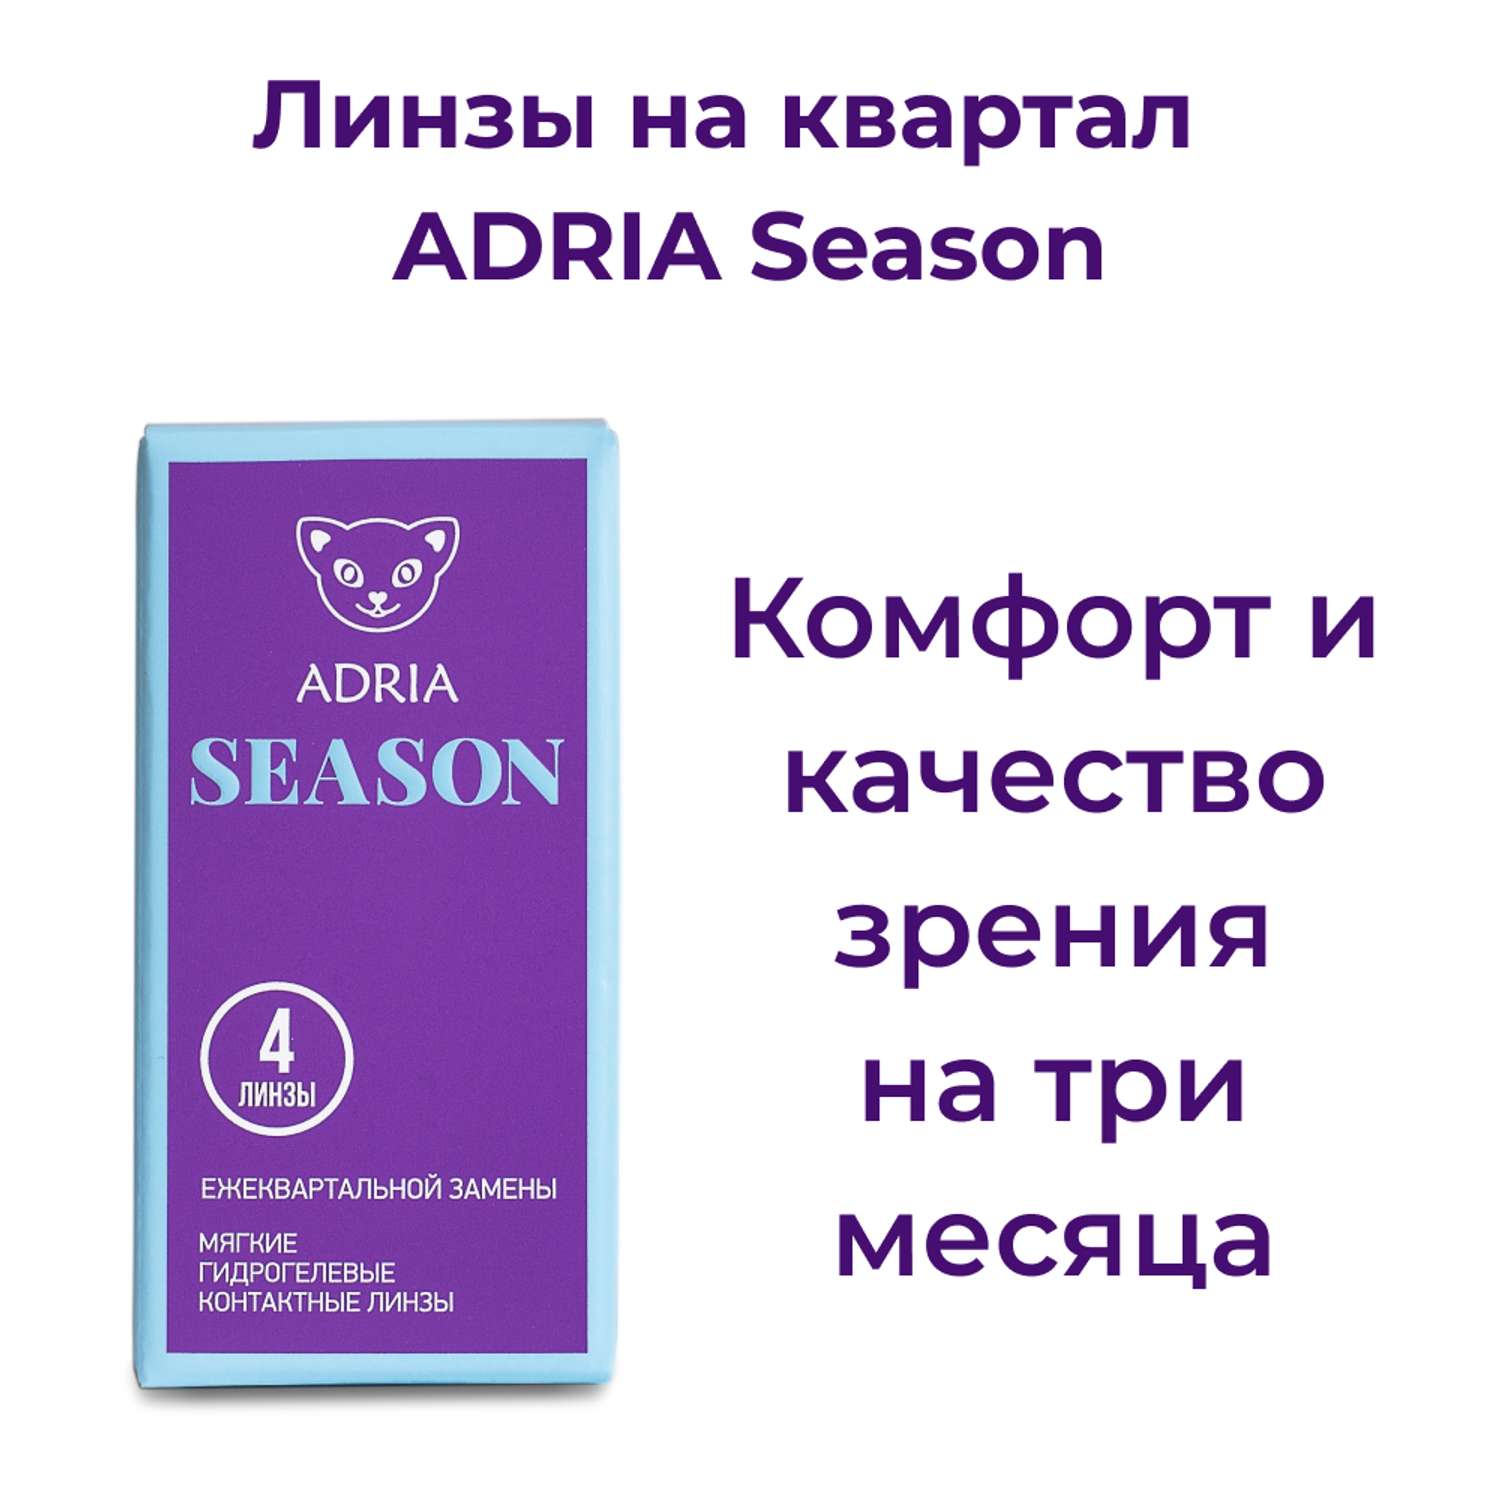 Контактные линзы ADRIA Season 4 линзы R 8.6 -5.50 - фото 2